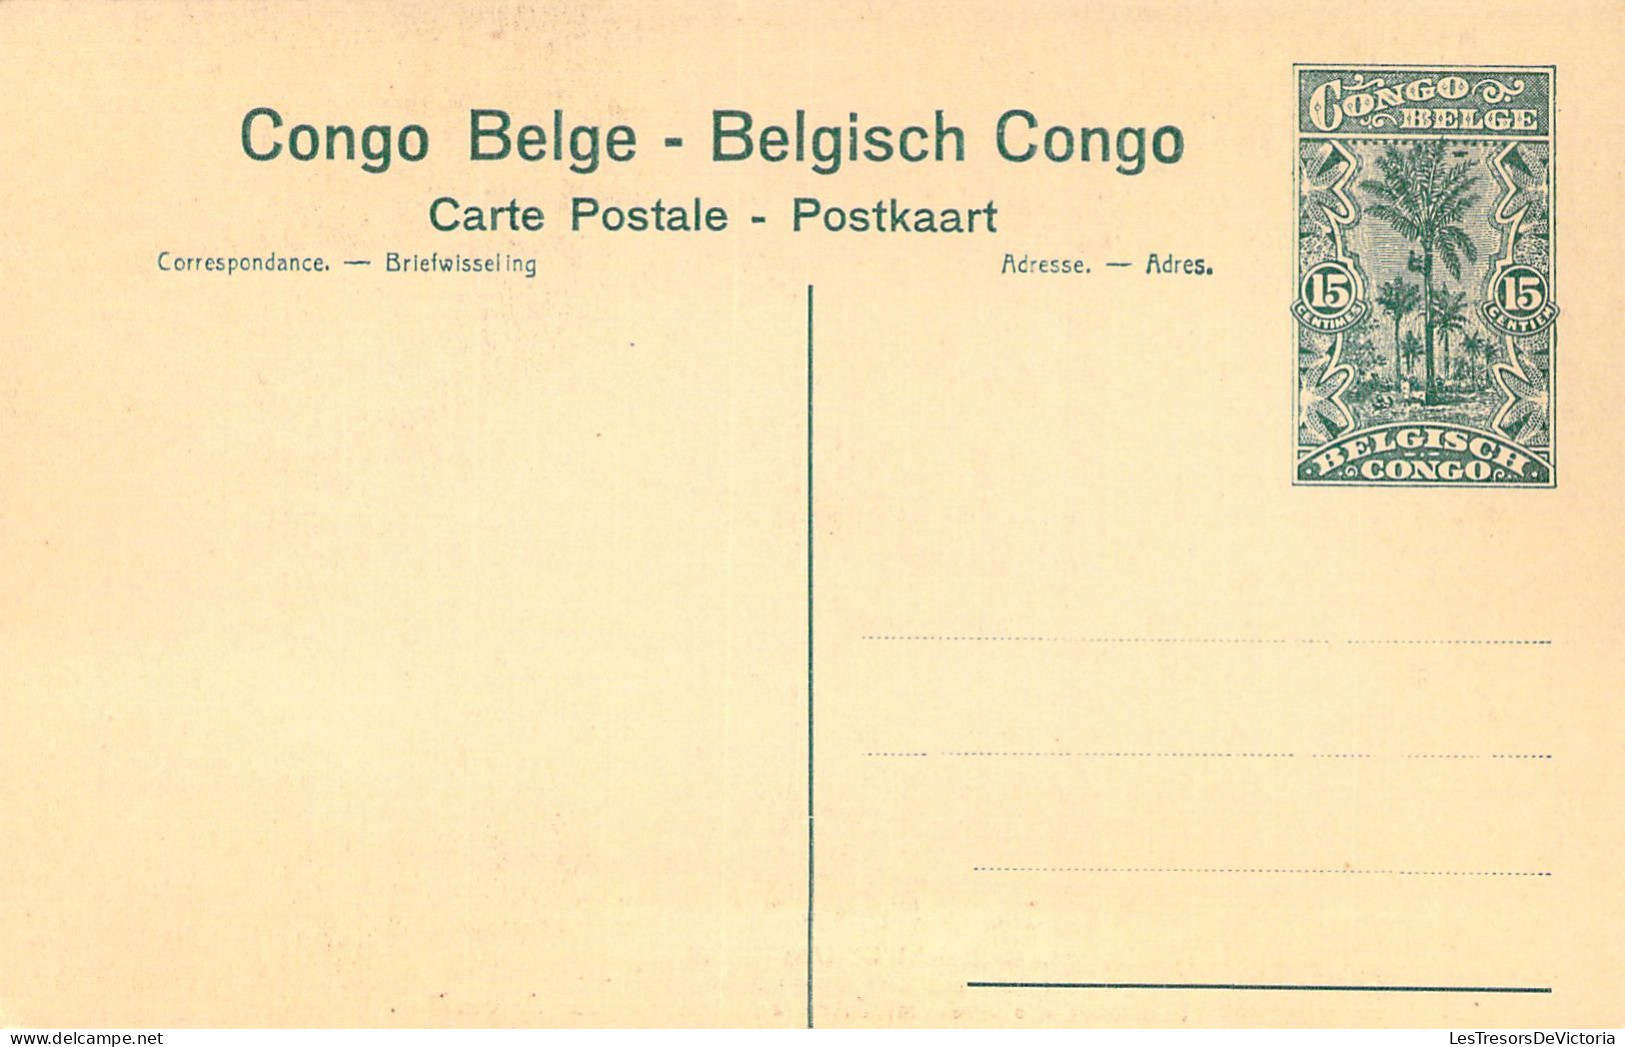 CONGO BELGE - BAUDOUINVILLE - Indigènes Apportant Des Vivres à La Mission - Carte Postale Ancienne - Belgisch-Kongo